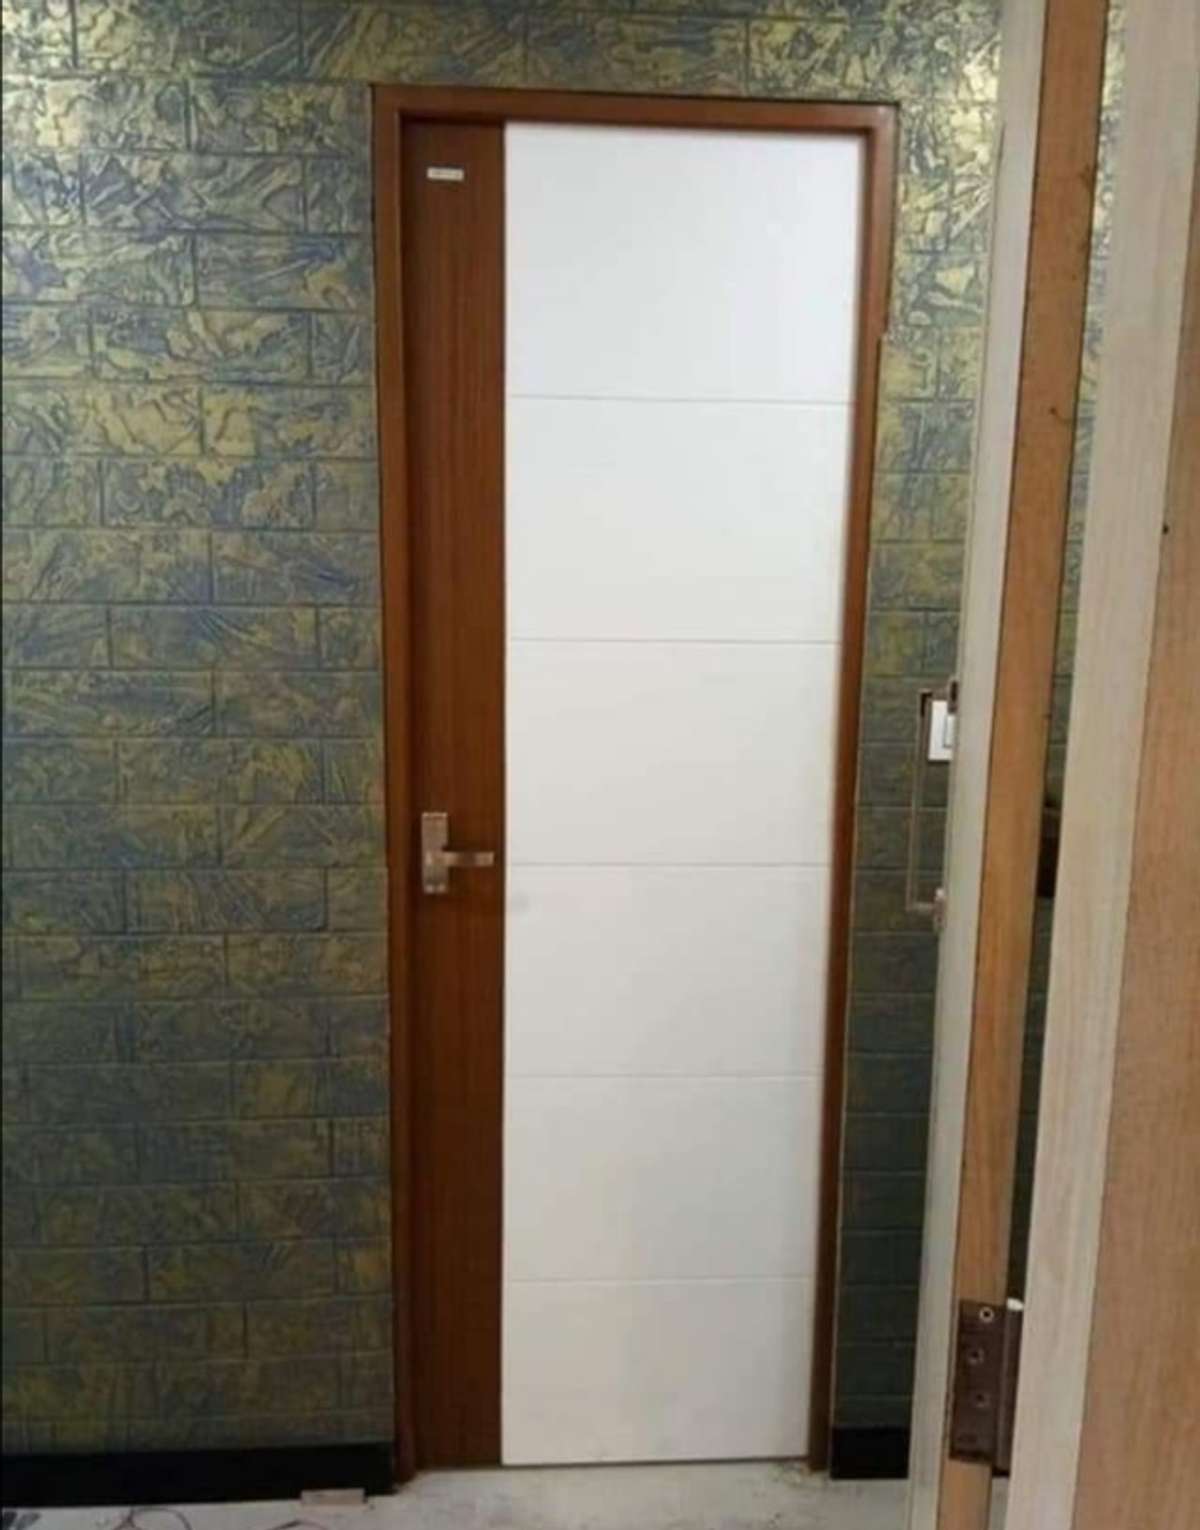 #BathroomDoors #FRPDOOR #toiletinterior #interiordoor